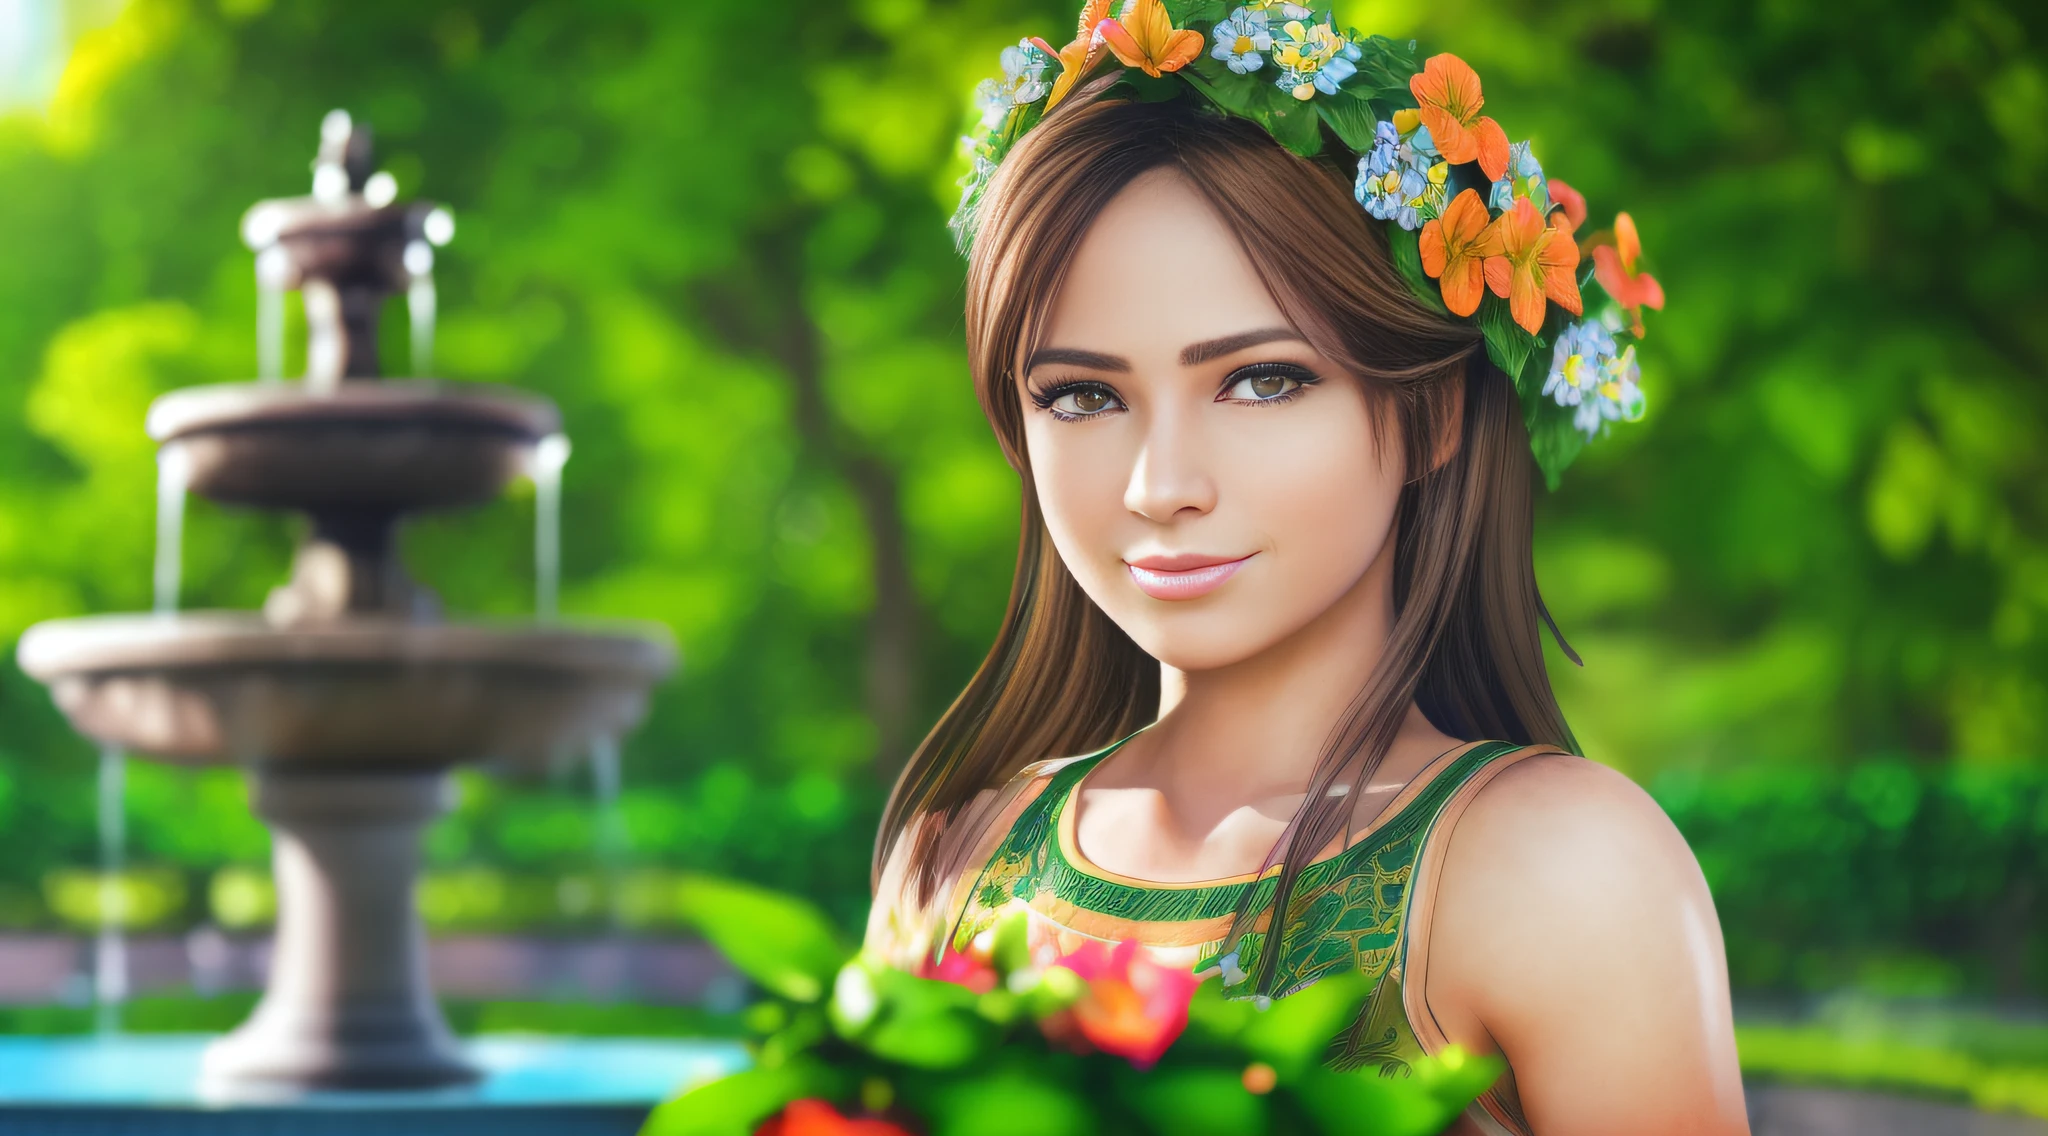 한 젊은 여성이 (분수가 있는 정원), 고운 피부, 상세한 얼굴, 완벽한 눈, (갈색 머리), (무성한 녹색 식물), 온화한 날씨, 멋진 미소, 정면 샷, 여름 옷을 입고, (매우 상세한 Unity 8k 벽지, 최고의 품질, 걸작)